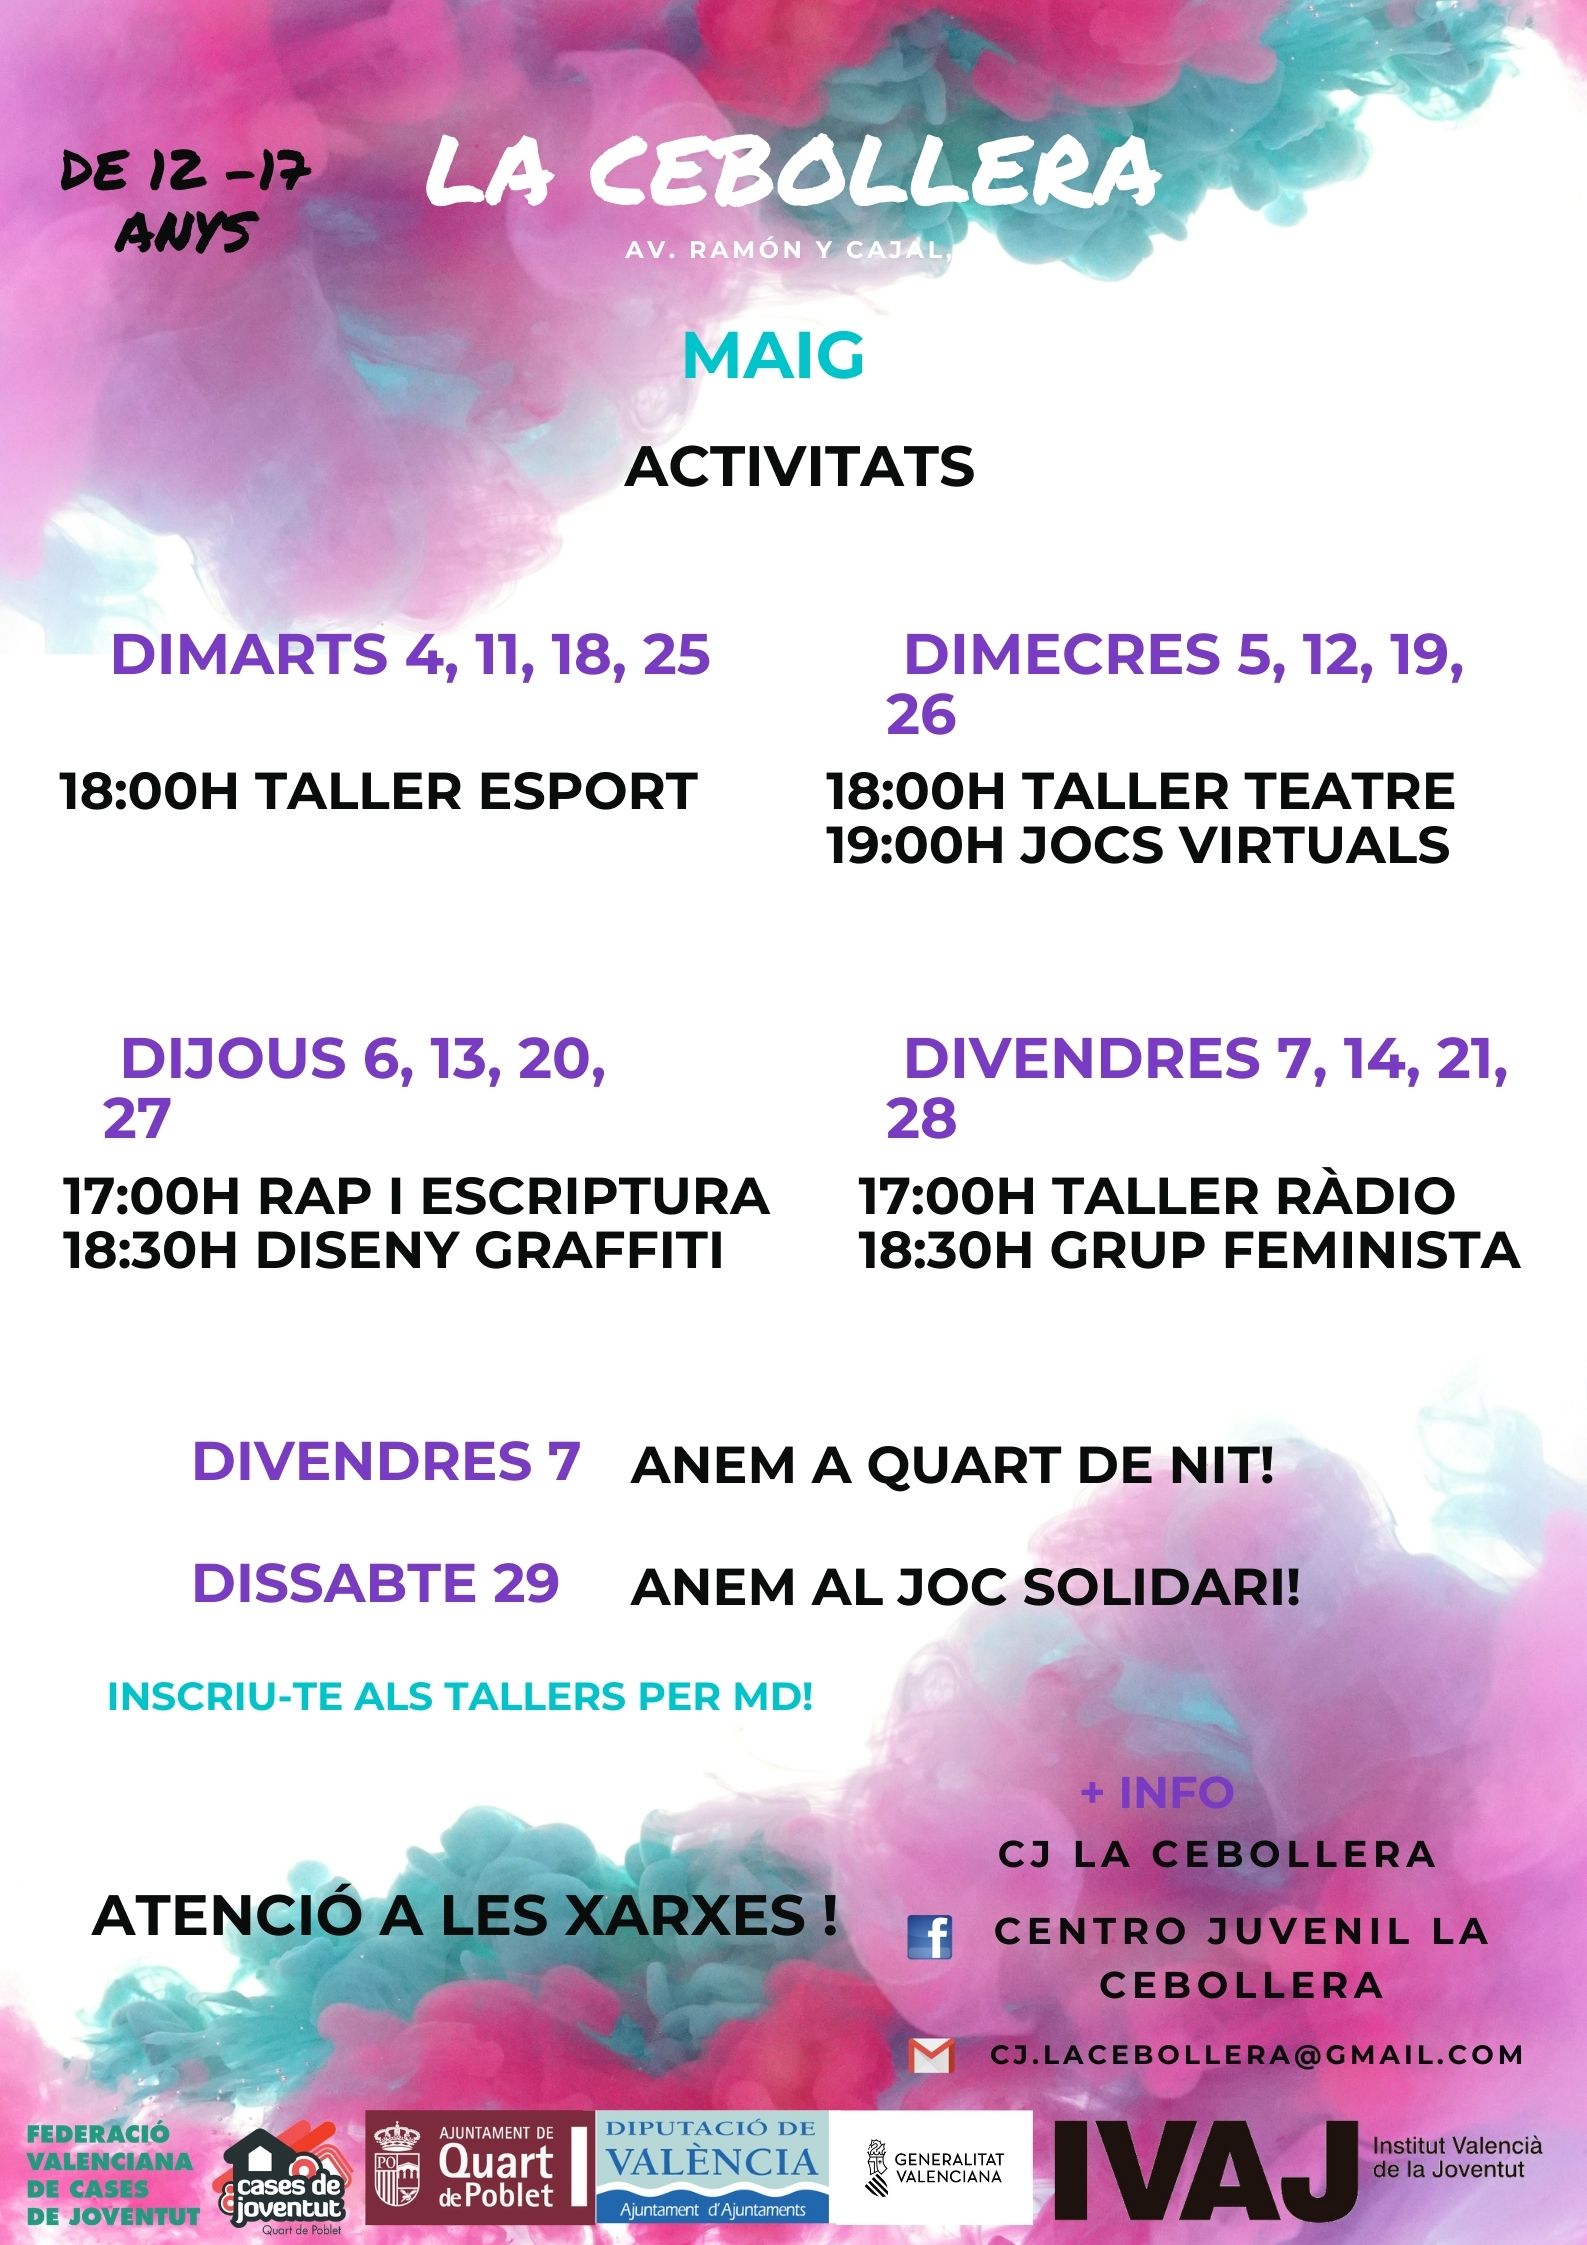 Activitats del centre juvenil La Cebollera a maig 2021